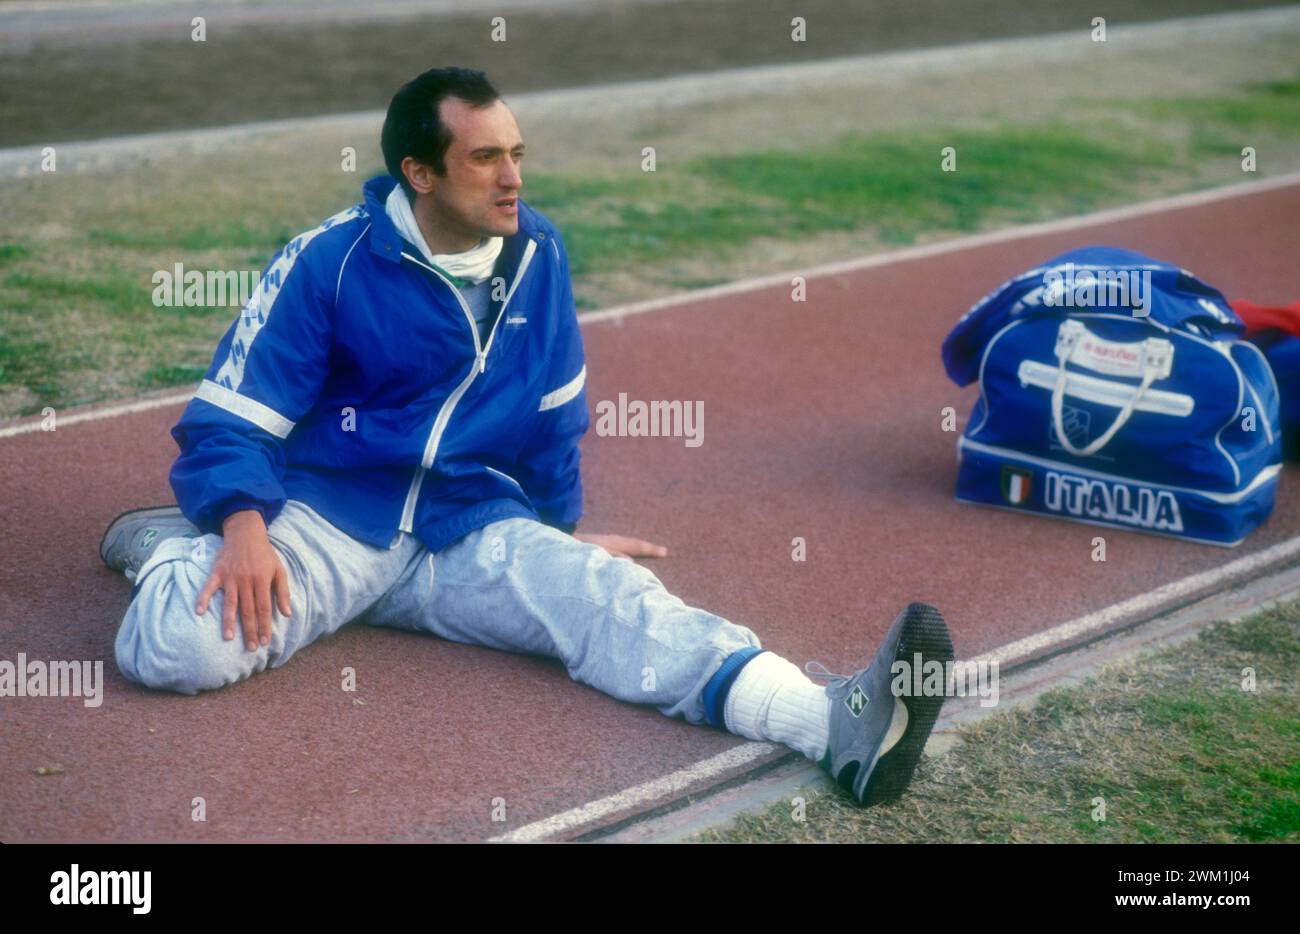 4069442 L'athlète italien Pietro Mennea qui a détenu le record du monde du 200 m pendant 17 ans (de 1979 à 1996), vers 1985 (photo) ; (add.info.: L'atleta Pietro Mennea detentore per vent'anni (dal 1979 al 1996) del record mondial sui 200 metri piani, 1985 circa) ; © Marcello Mencarini. Tous droits réservés 2024. Banque D'Images